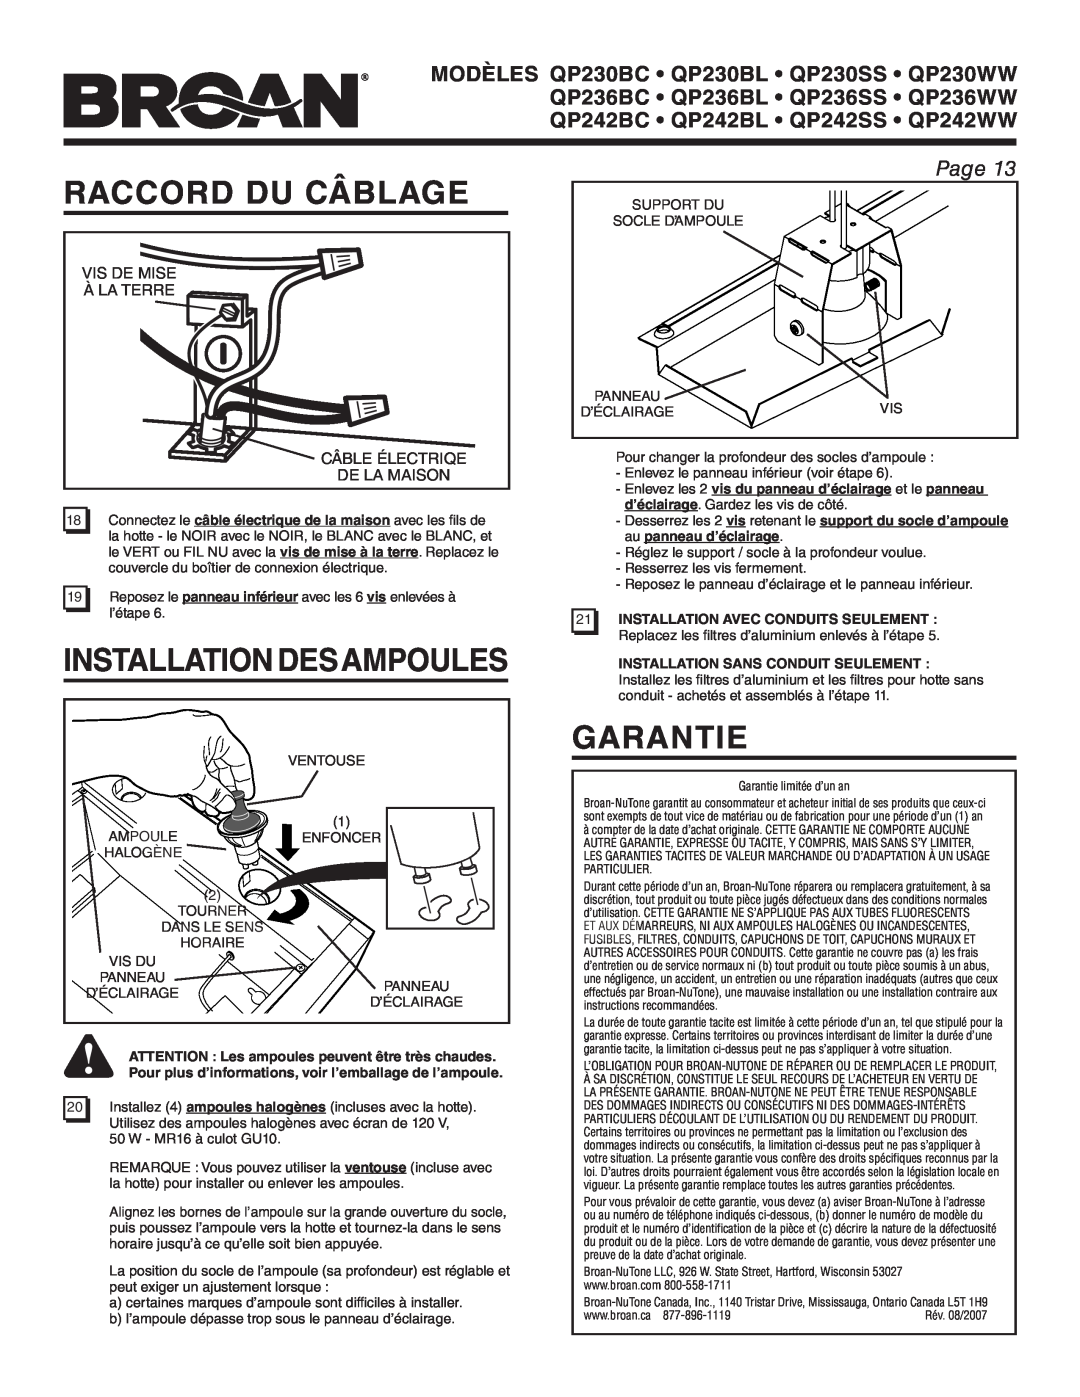 Broan QP242BL manual Raccord Du Câblage, Installation Desampoules, Garantie, Page, 21INSTALLATION AVEC CONDUITS SEULEMENT 